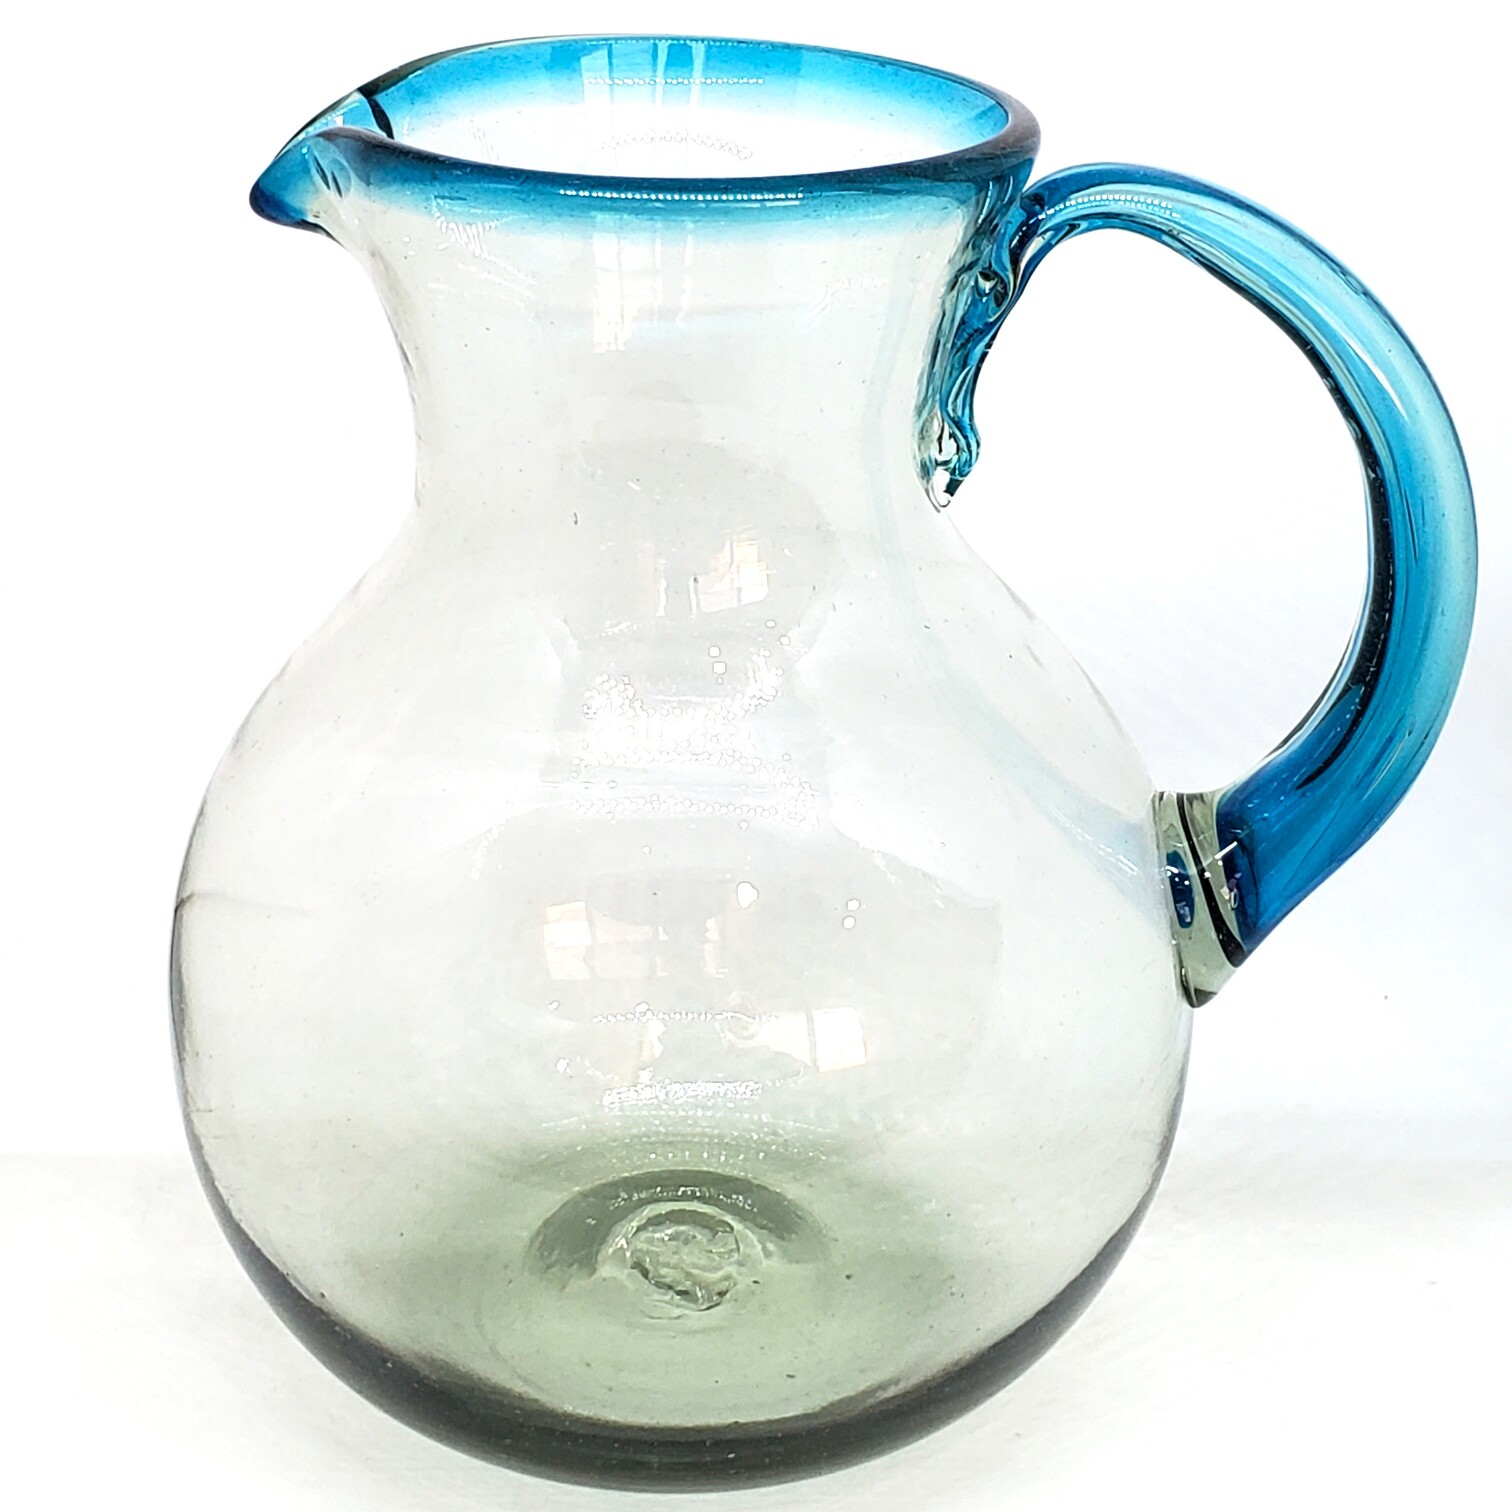 Novedades / Jarra de vidrio soplado con borde azul aqua / �sta moderna jarra viene decorada con un borde en azul aqua.